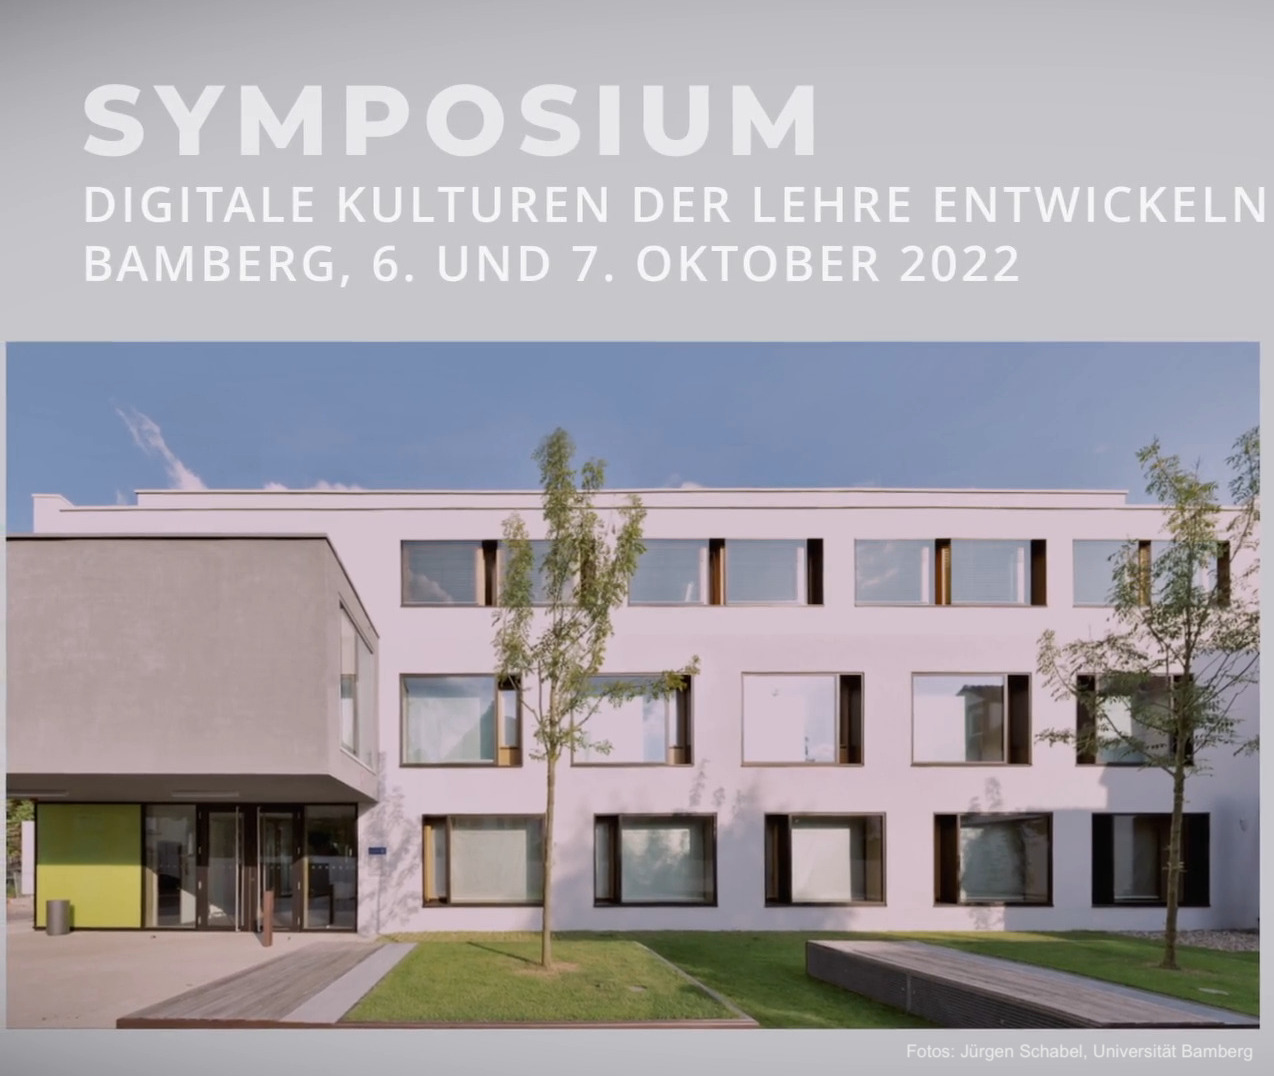 Vortrag im Rahmen des Symposiums „Digitale Kulturen der Lehre entwickeln“ an der Universität Bamberg